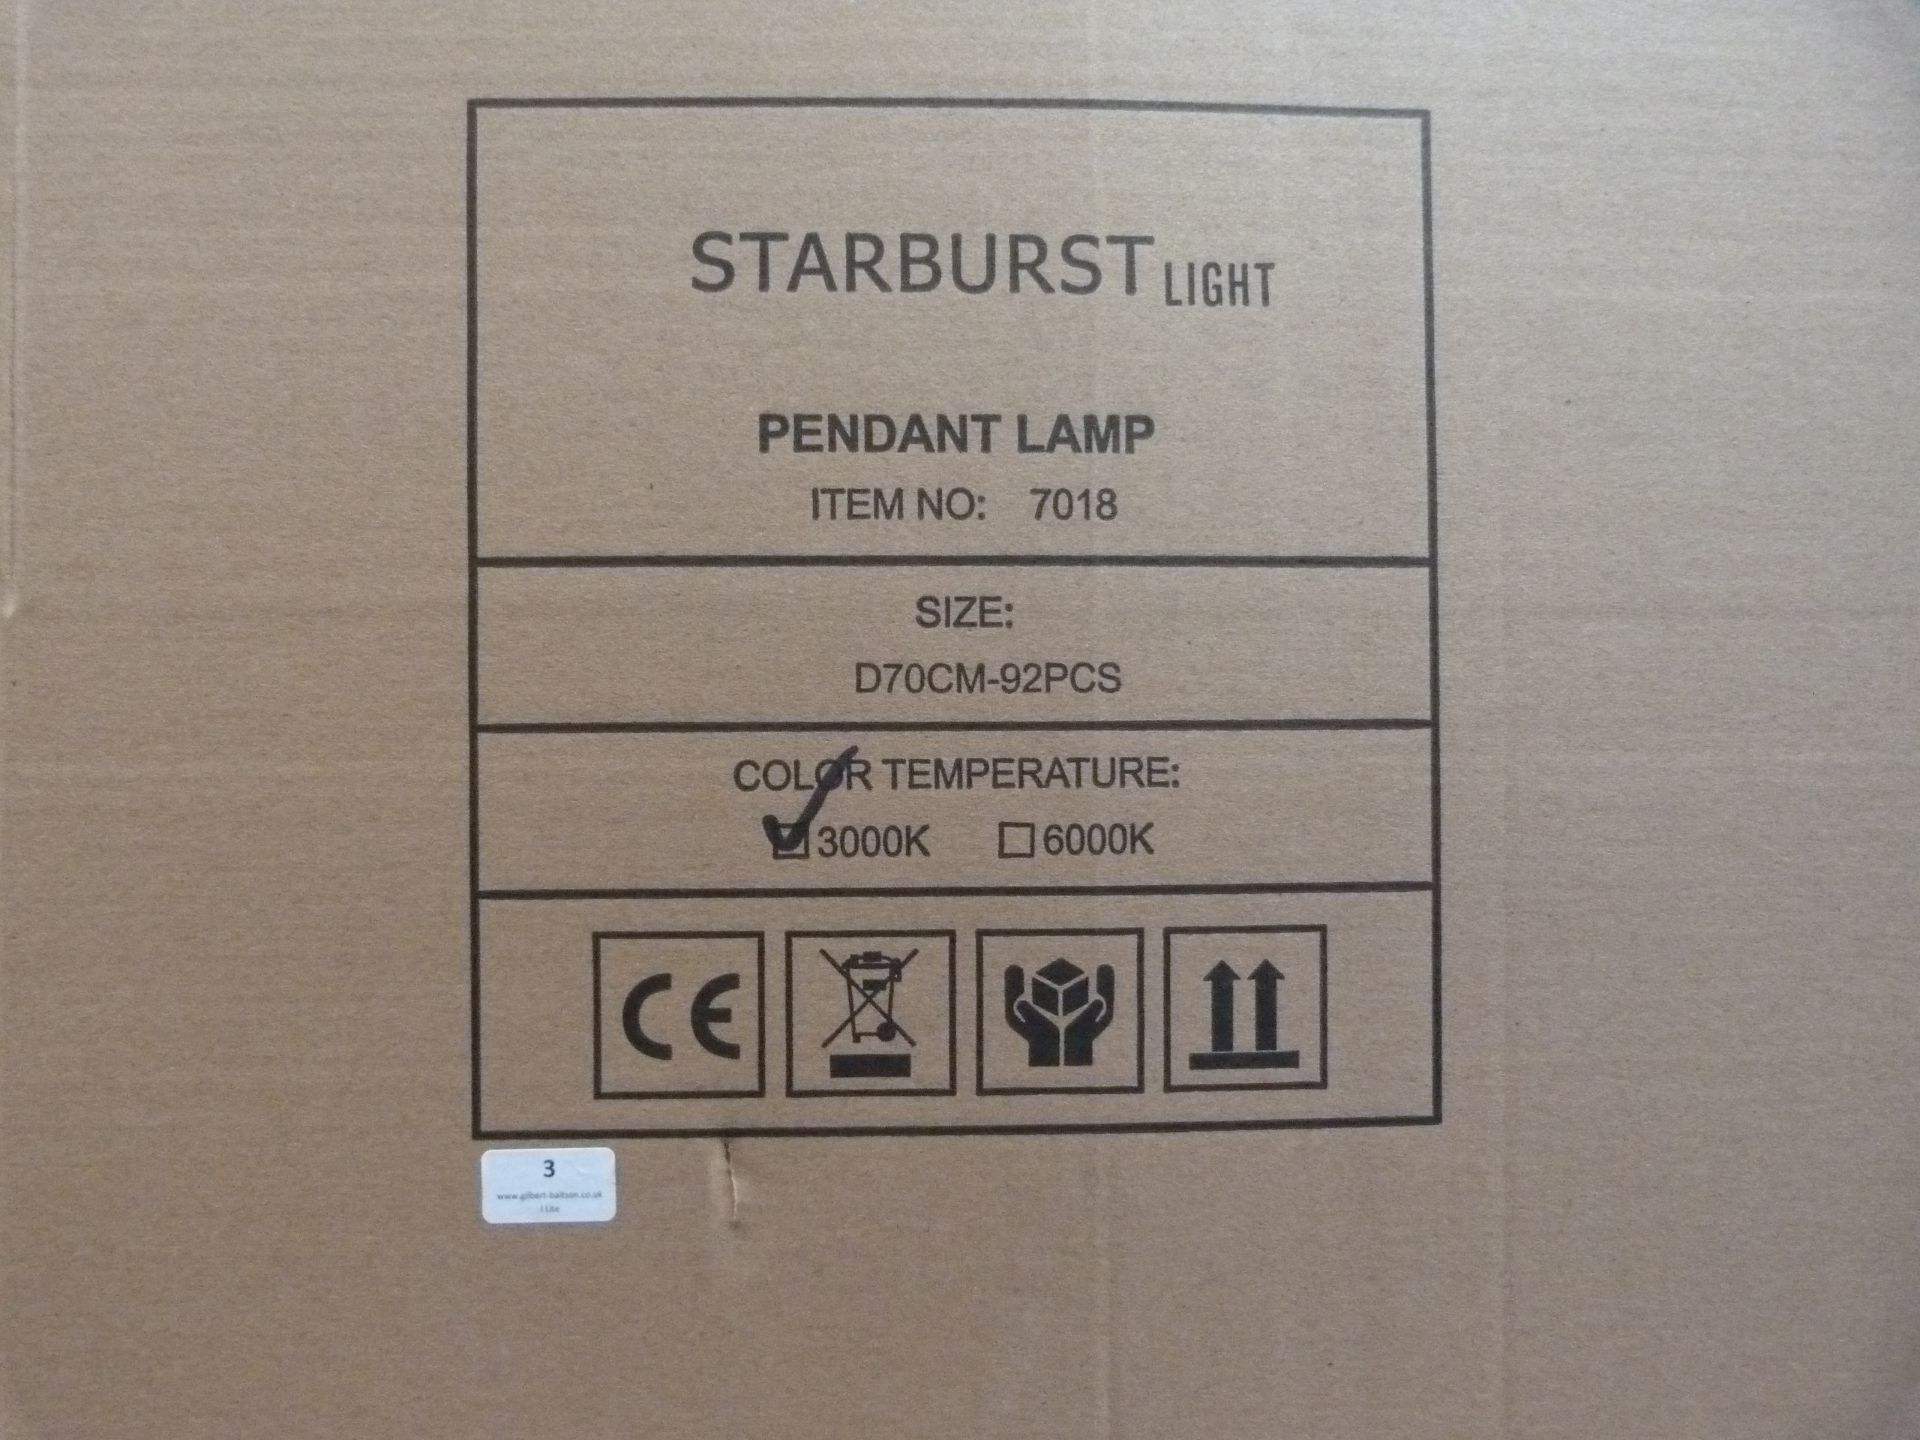 *4 Starburst Pendant Lamps Item No.7018, Size: D70CM-92PCS - Image 2 of 3